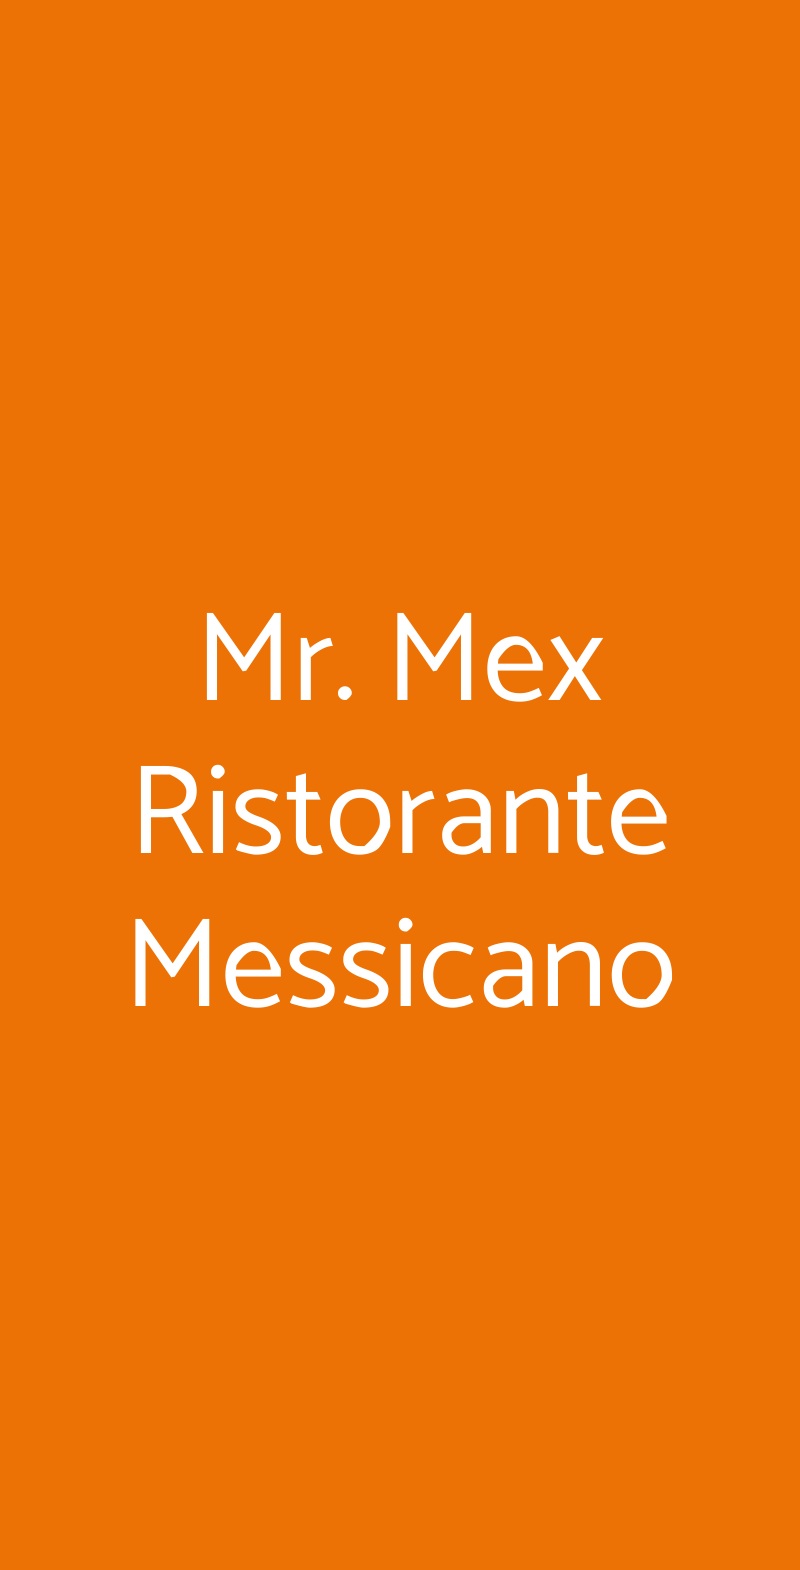 Mr. Mex Ristorante Messicano Ravenna menù 1 pagina